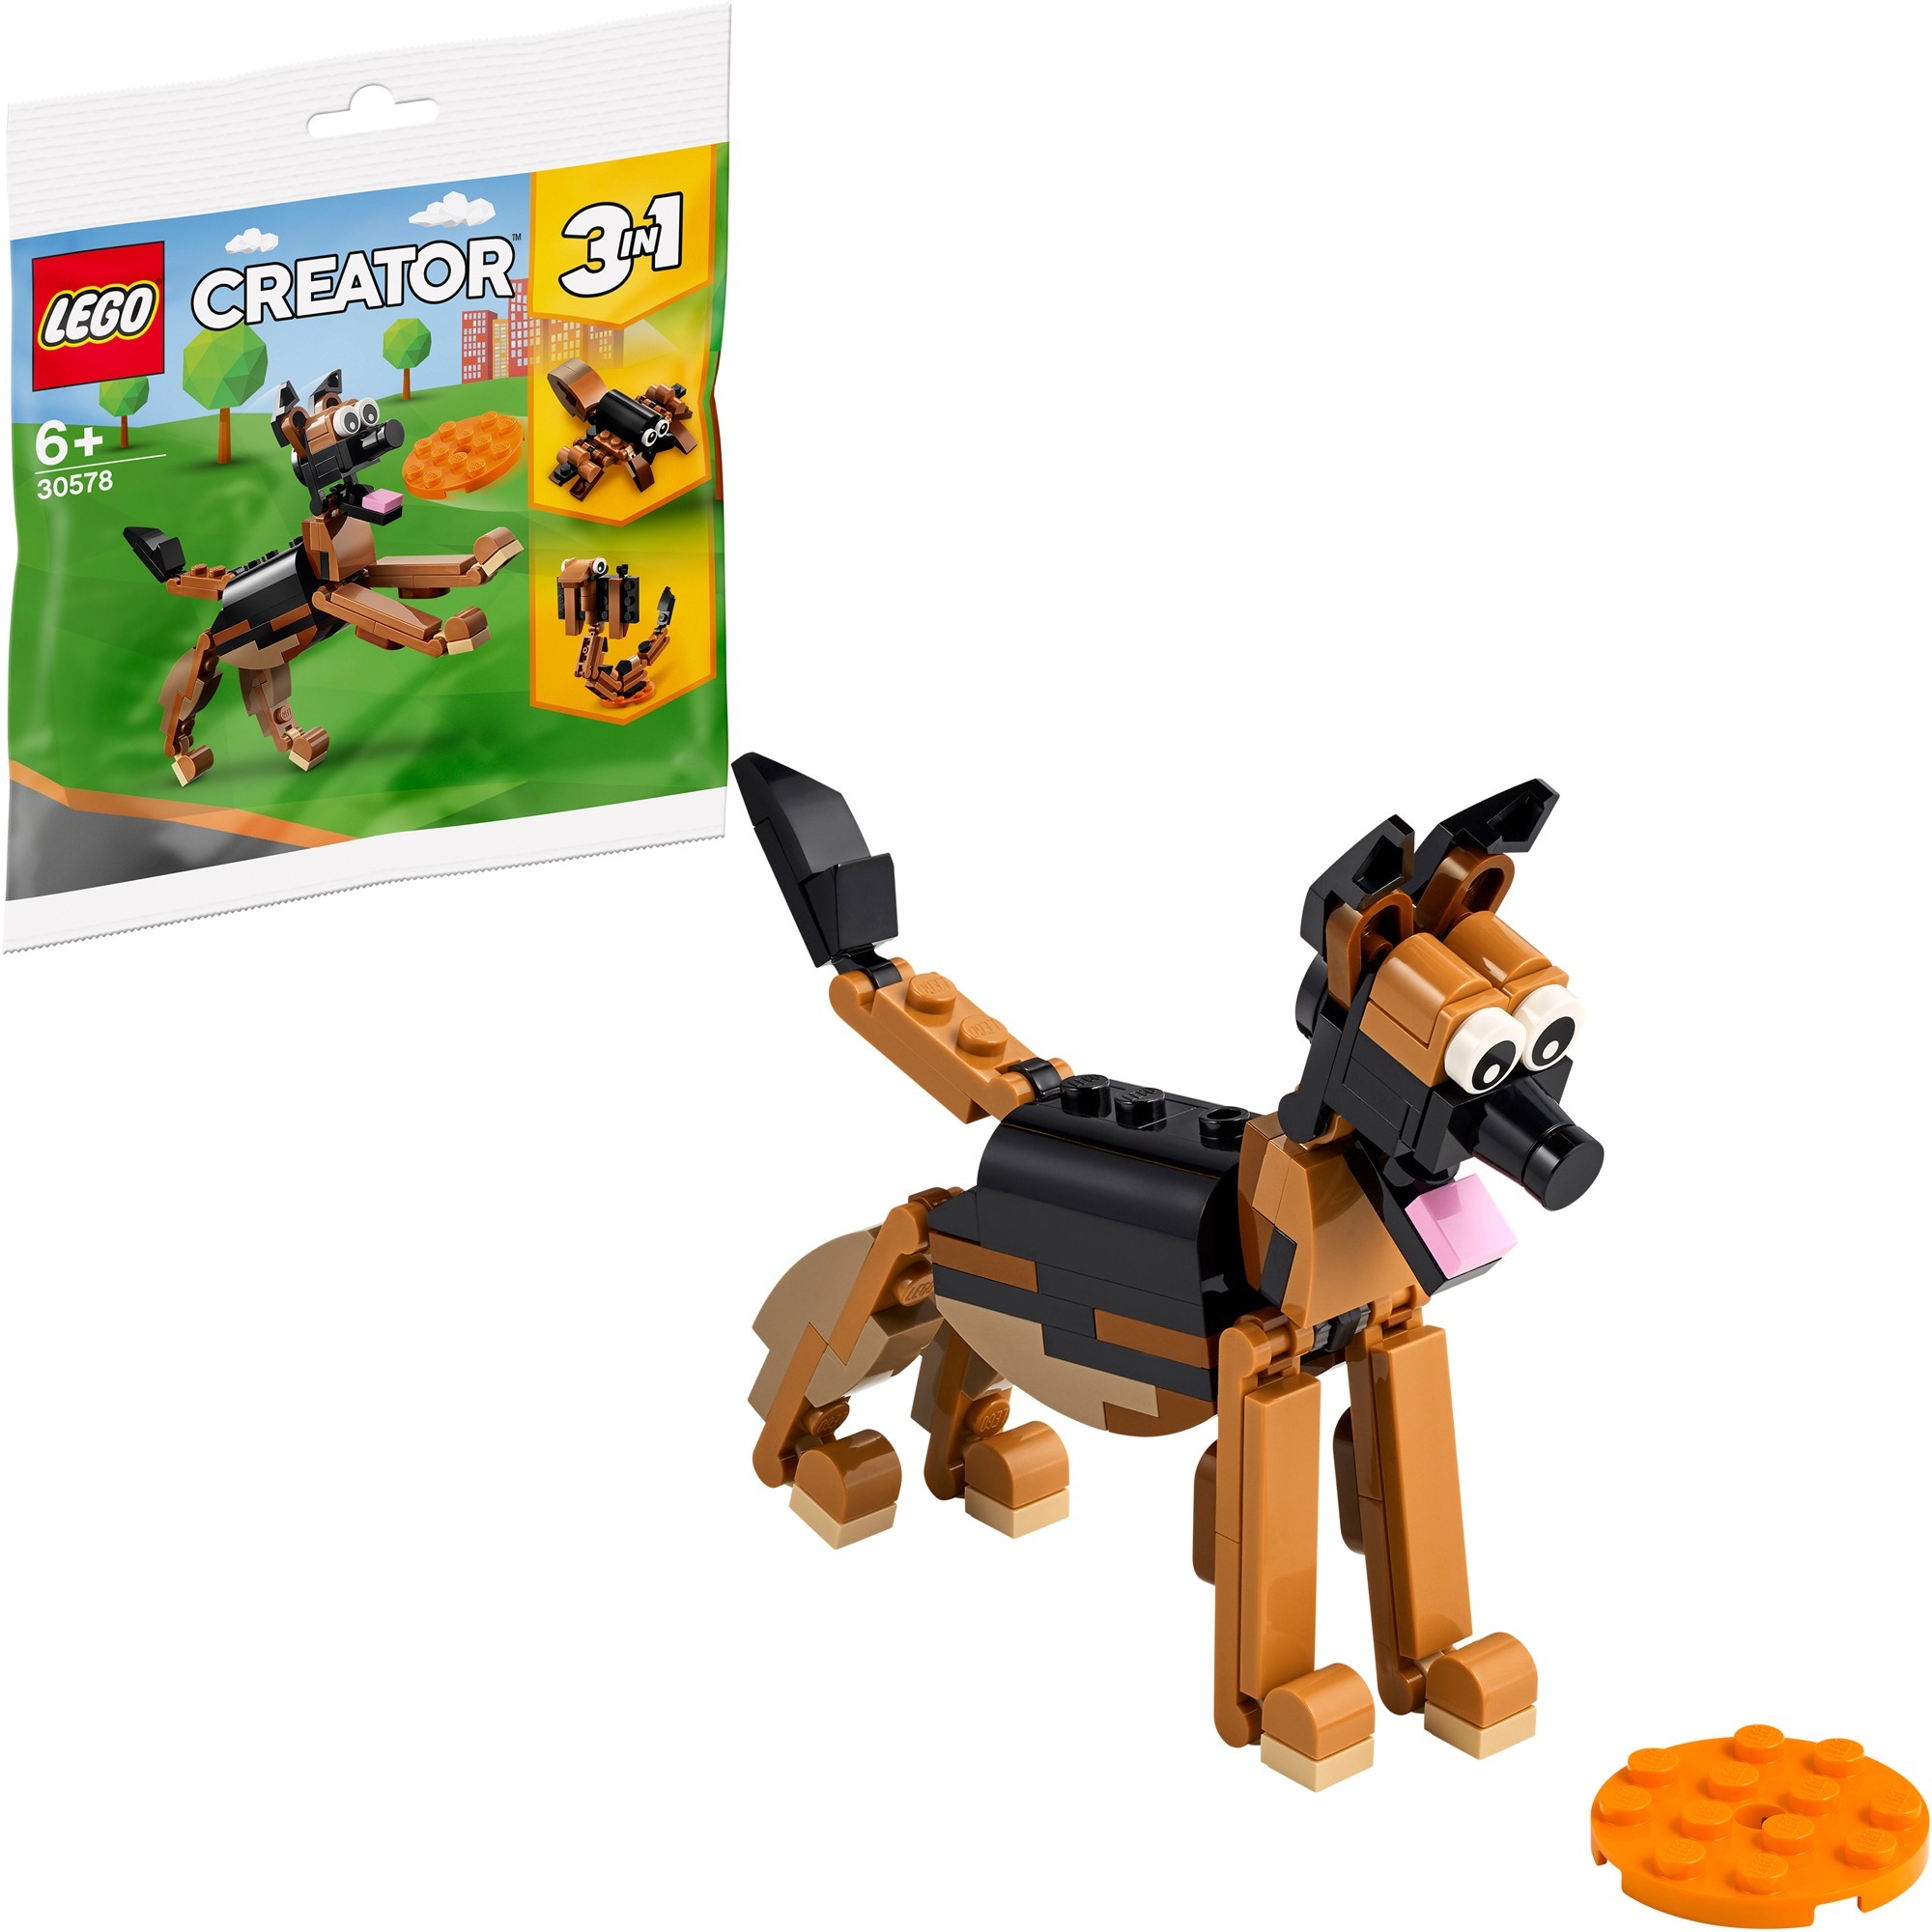 Image of Alternate - 30578 Creator Deutscher Schäferhund, Konstruktionsspielzeug online einkaufen bei Alternate